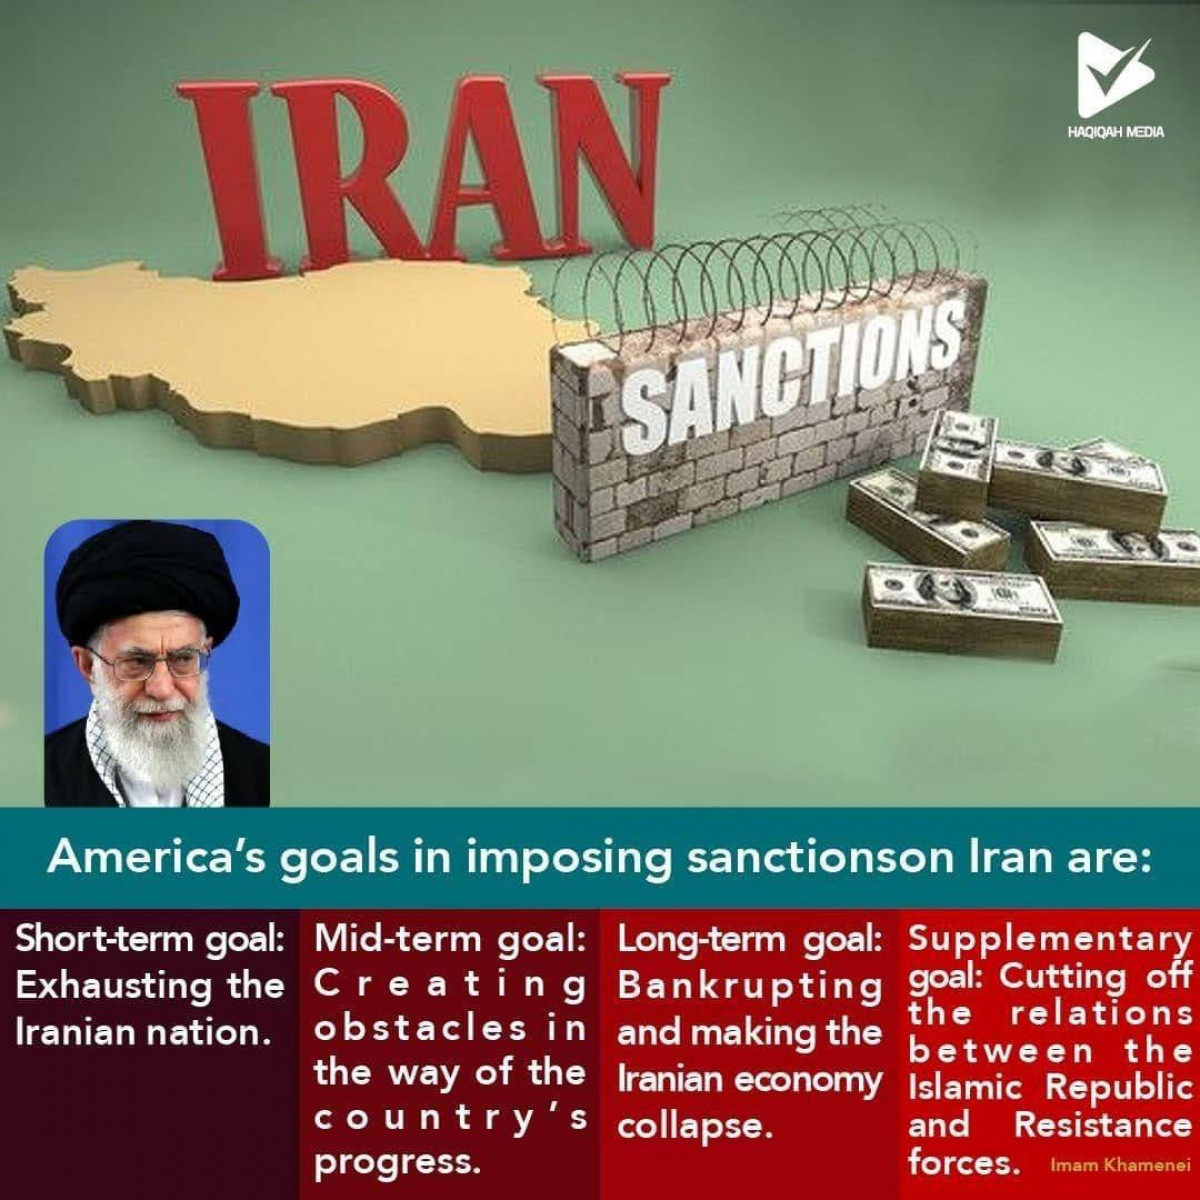 America’s goals in imposing sanctionson Iran are